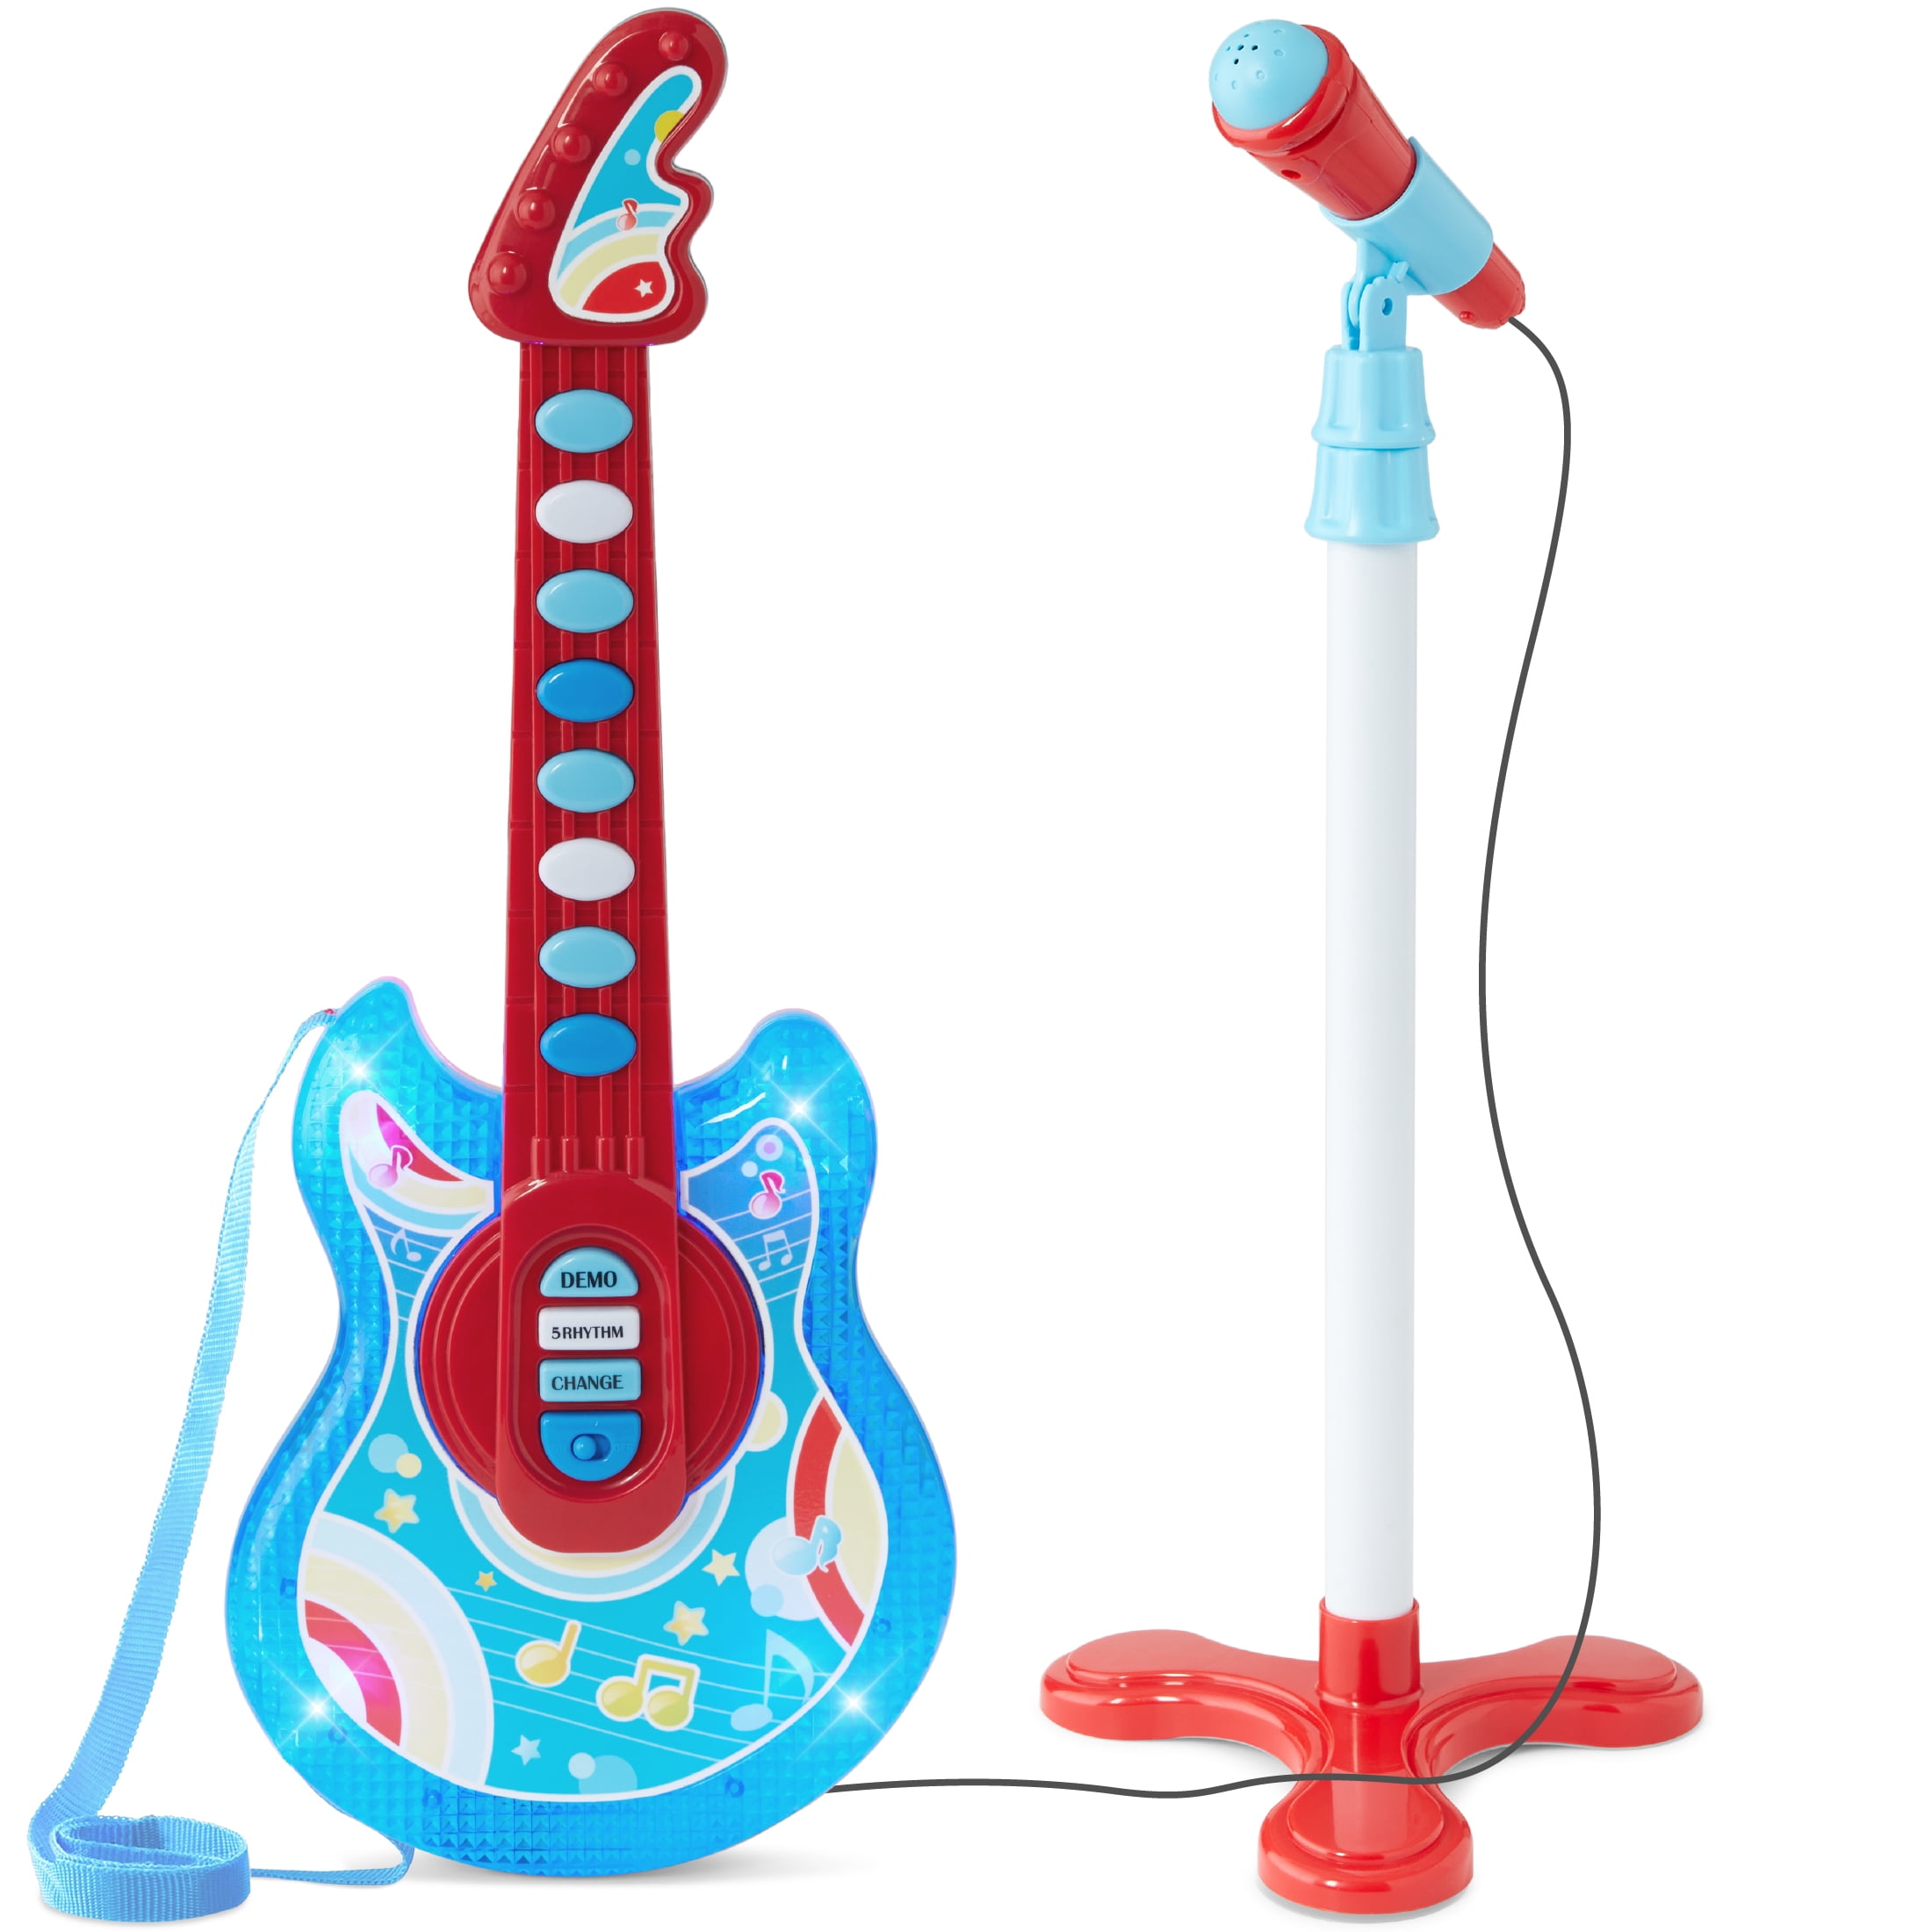 Guitare électrique USB, découverte de la guitare - 149,99 €